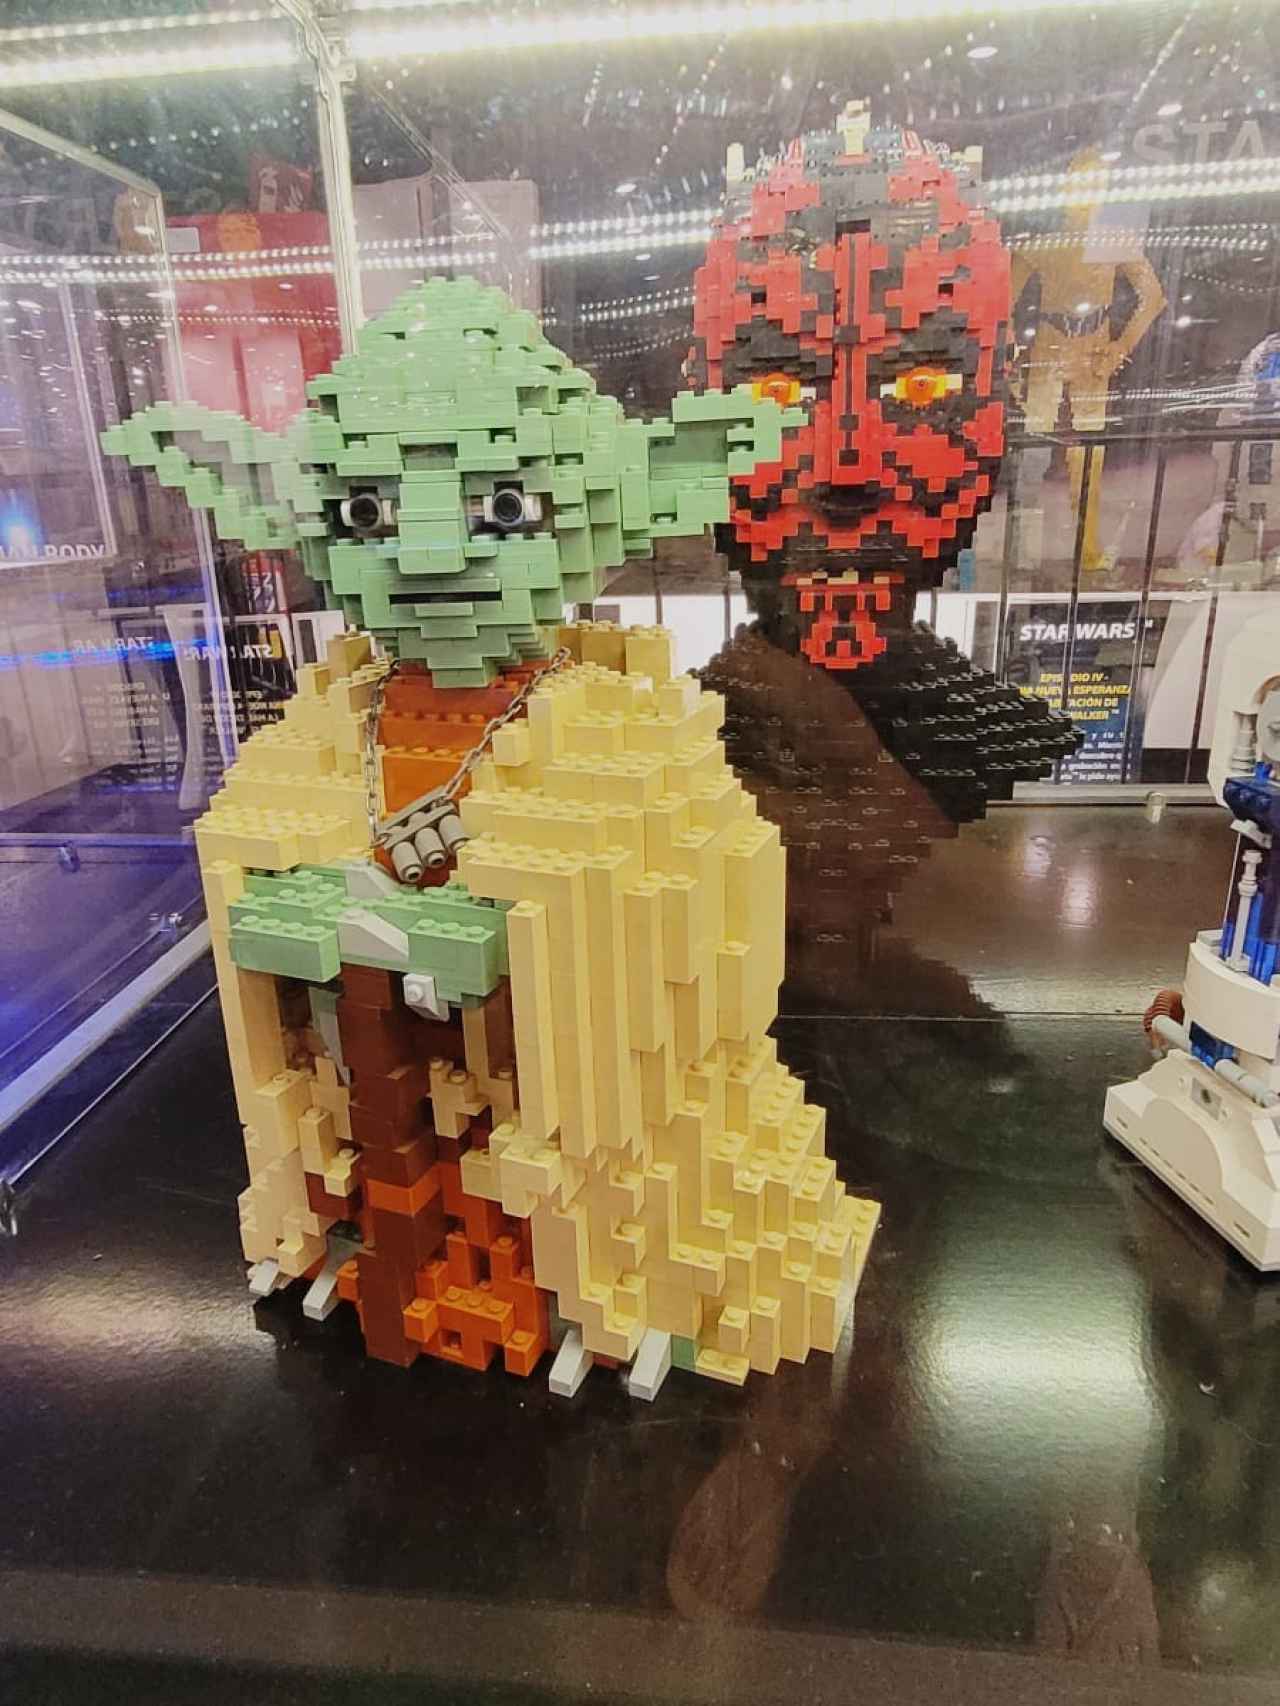 Personajes de Star Wars en Lego